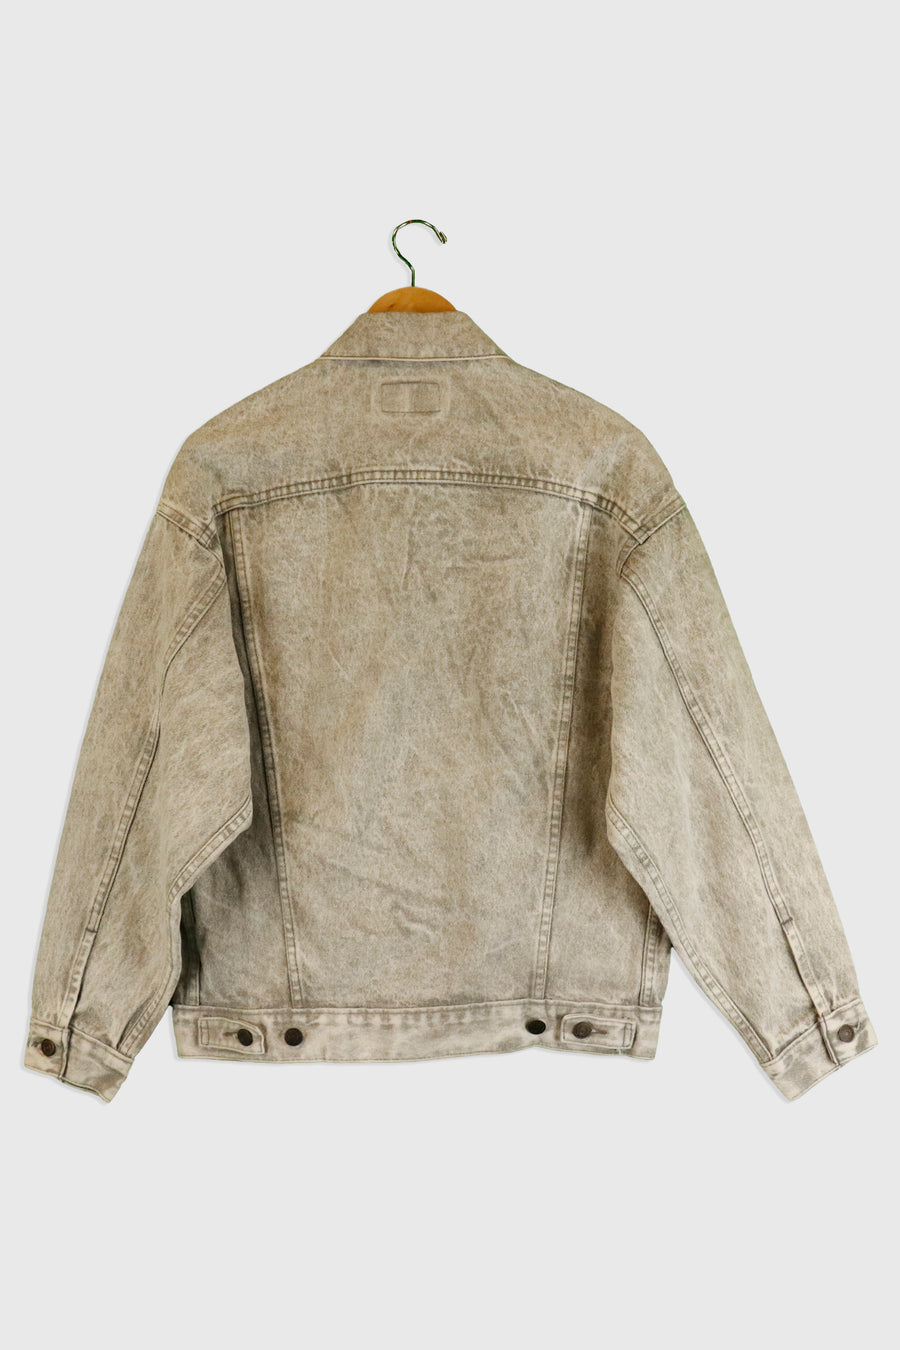 Vintage Levi Strauss & Co. Grey Denim Jacket Sz S